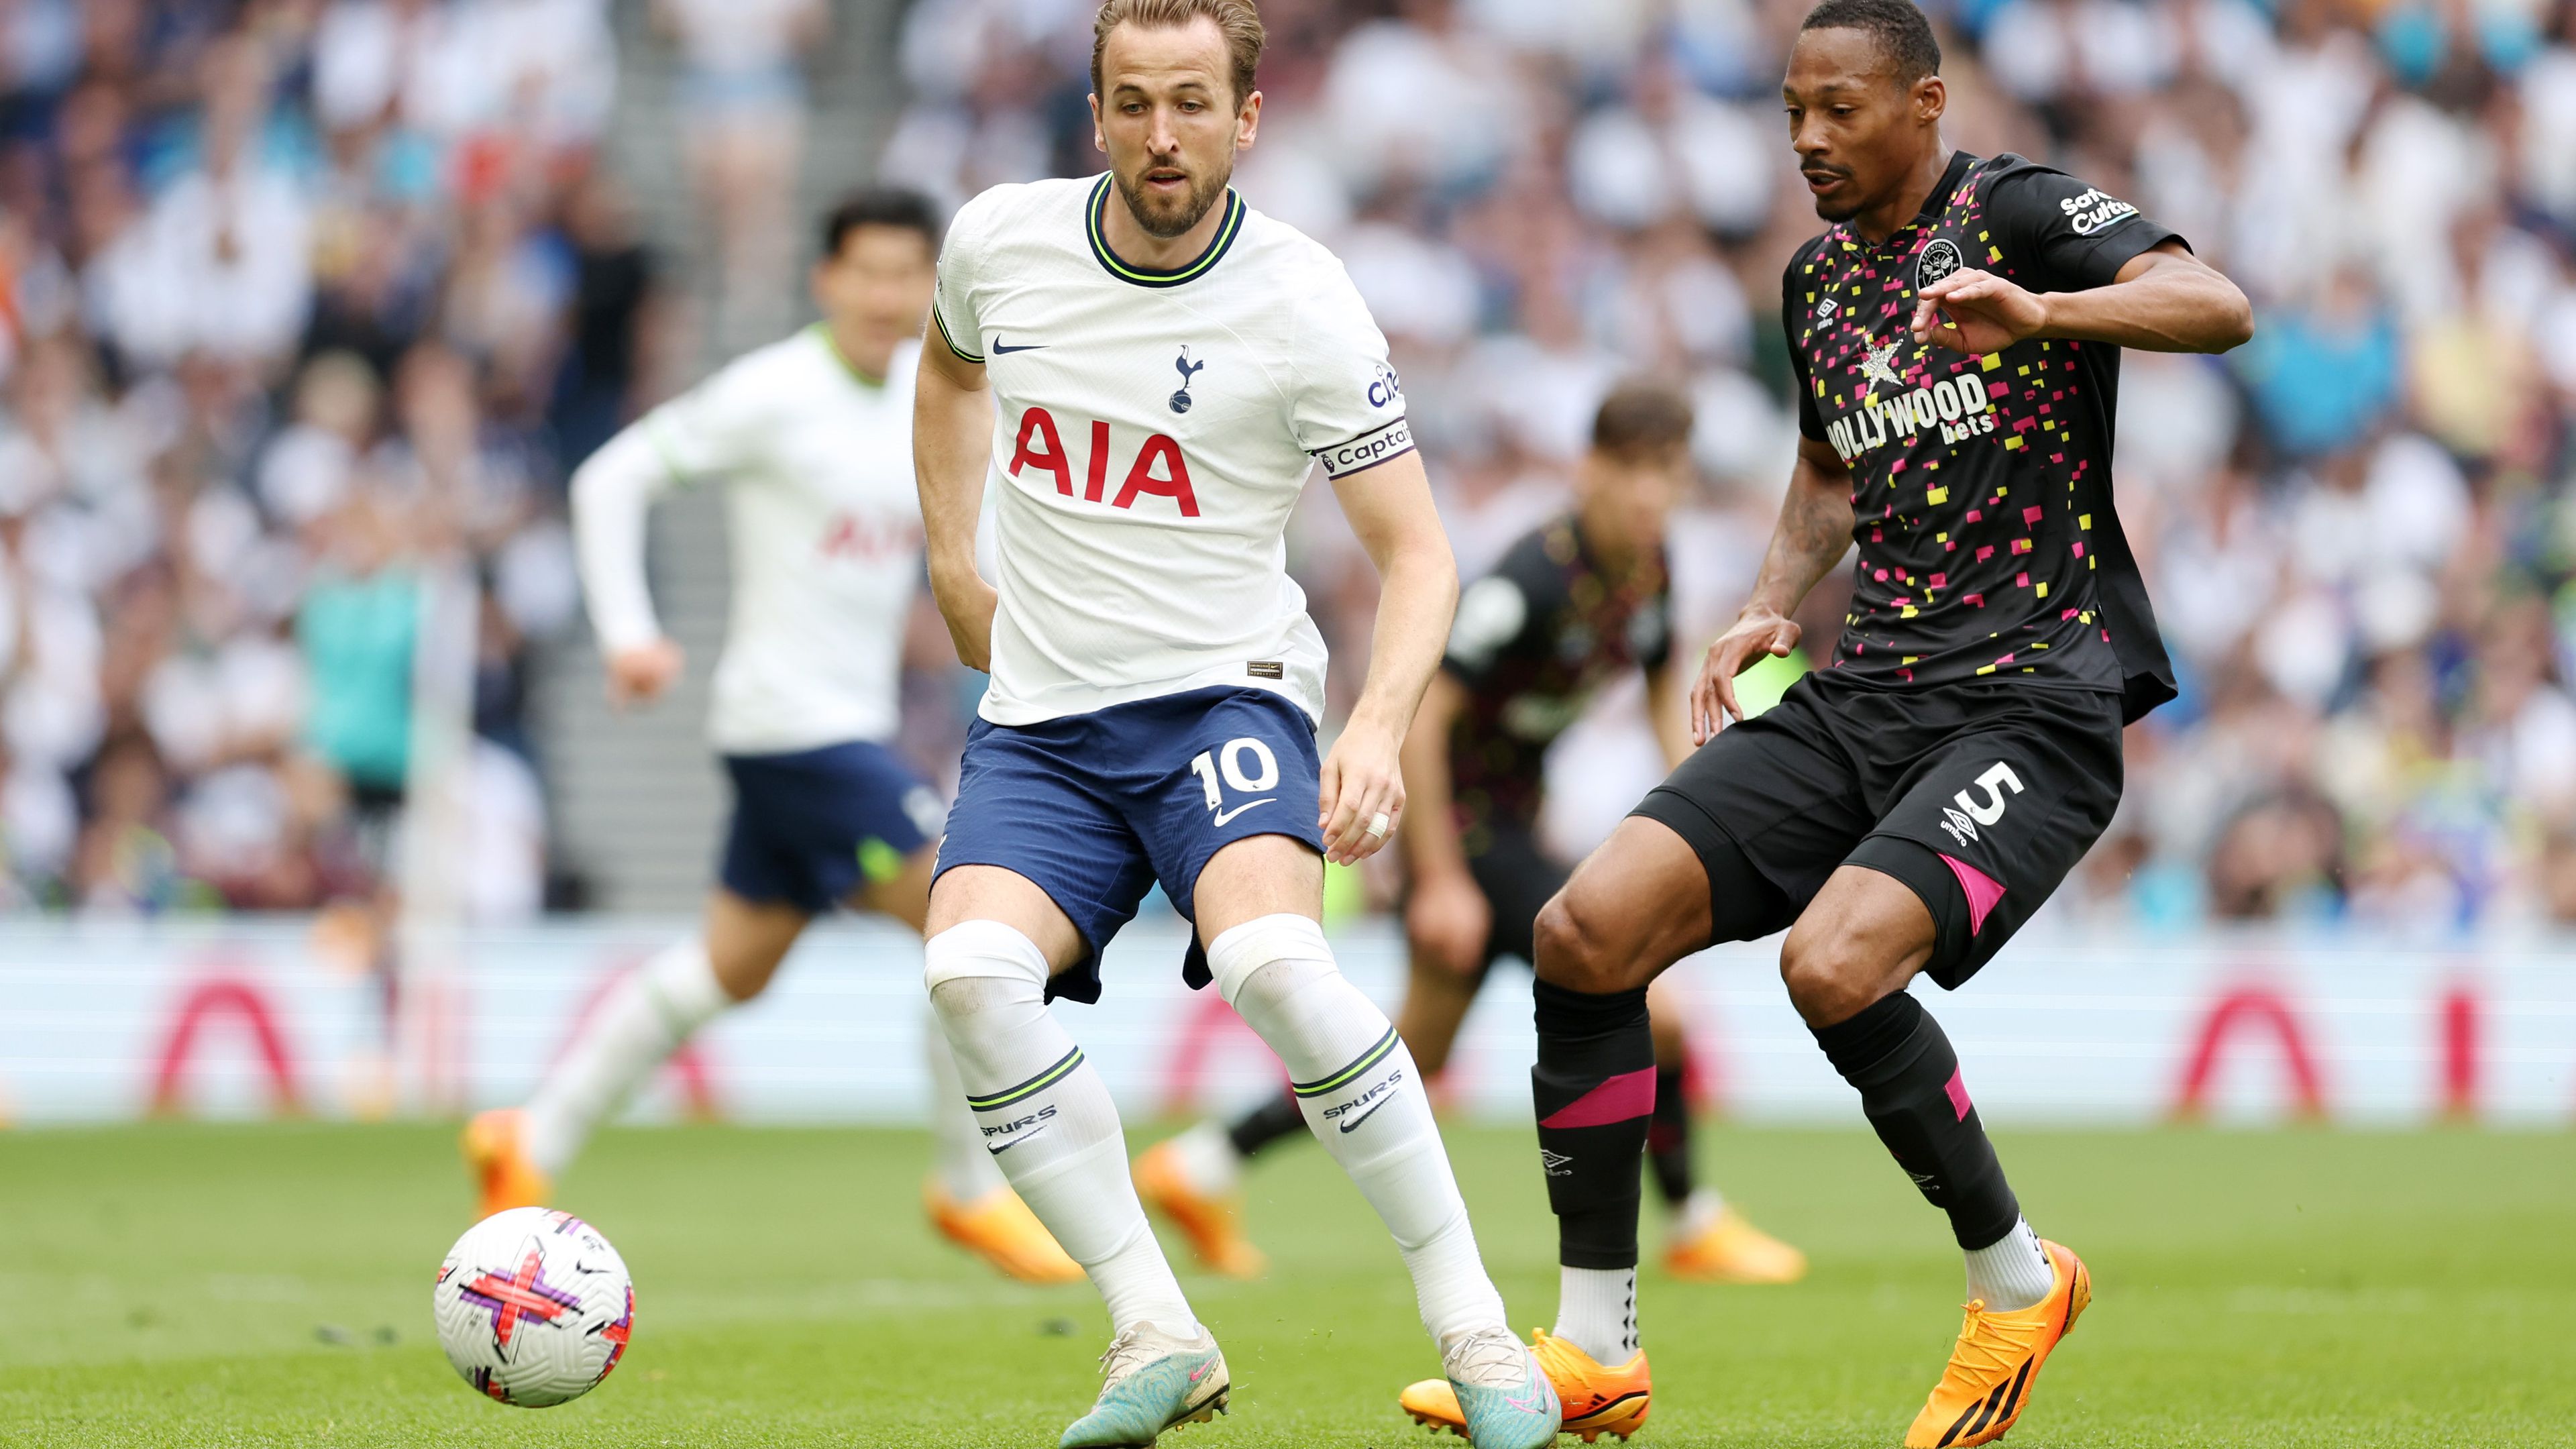 Kane-re lehet számítani, hatalmas gólt lőtt, mégis kikapott a Tottenham – videóval